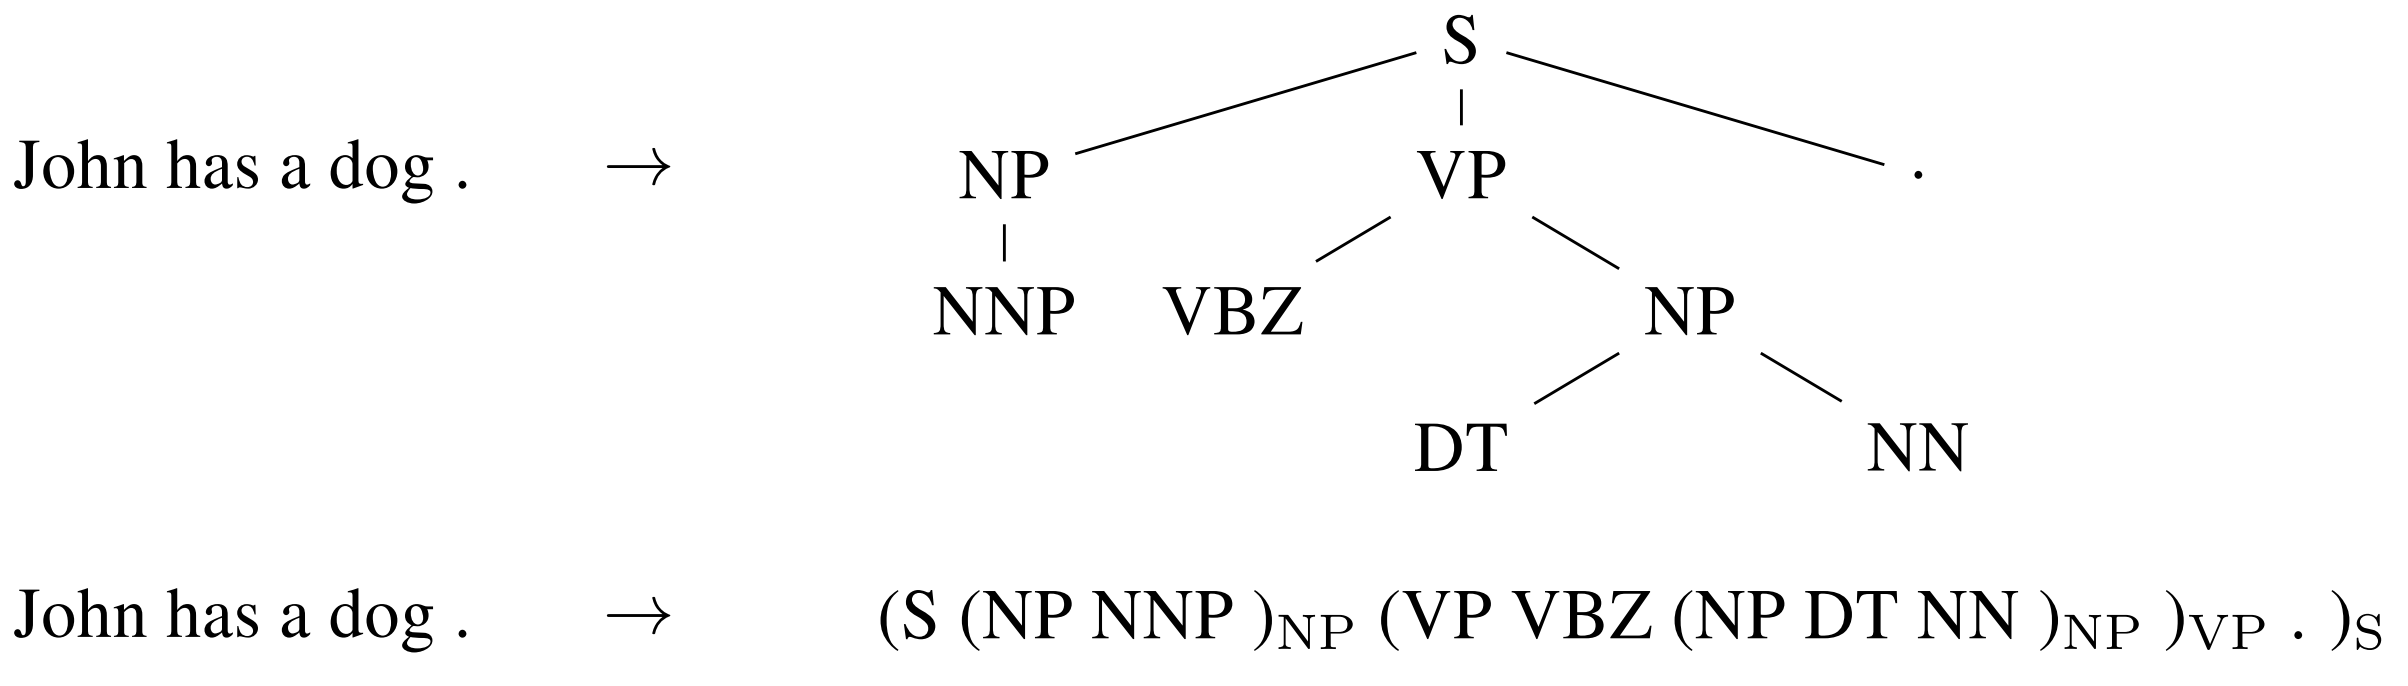 Linearizing a constituency parse tree (Vinyals et al., 2015)